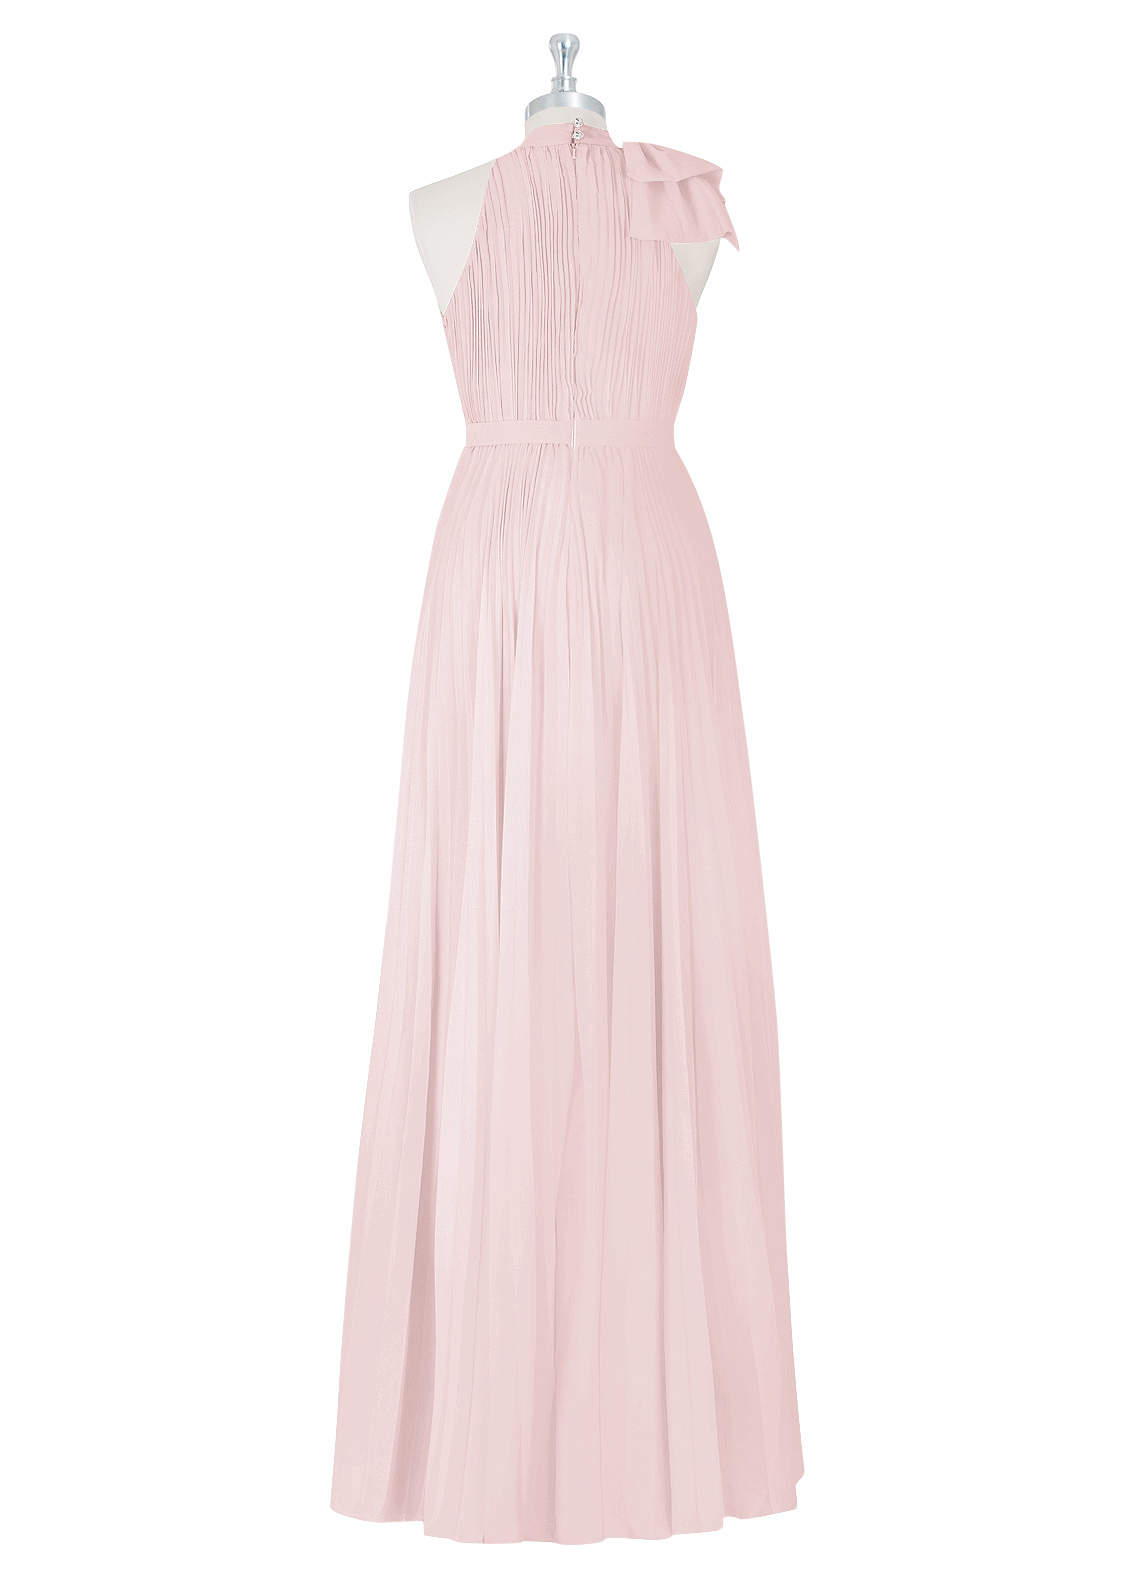 Azazie Cailyn Bridesmaid Dresses A-Line Pleated Chiffon Floor-Length Dress image1